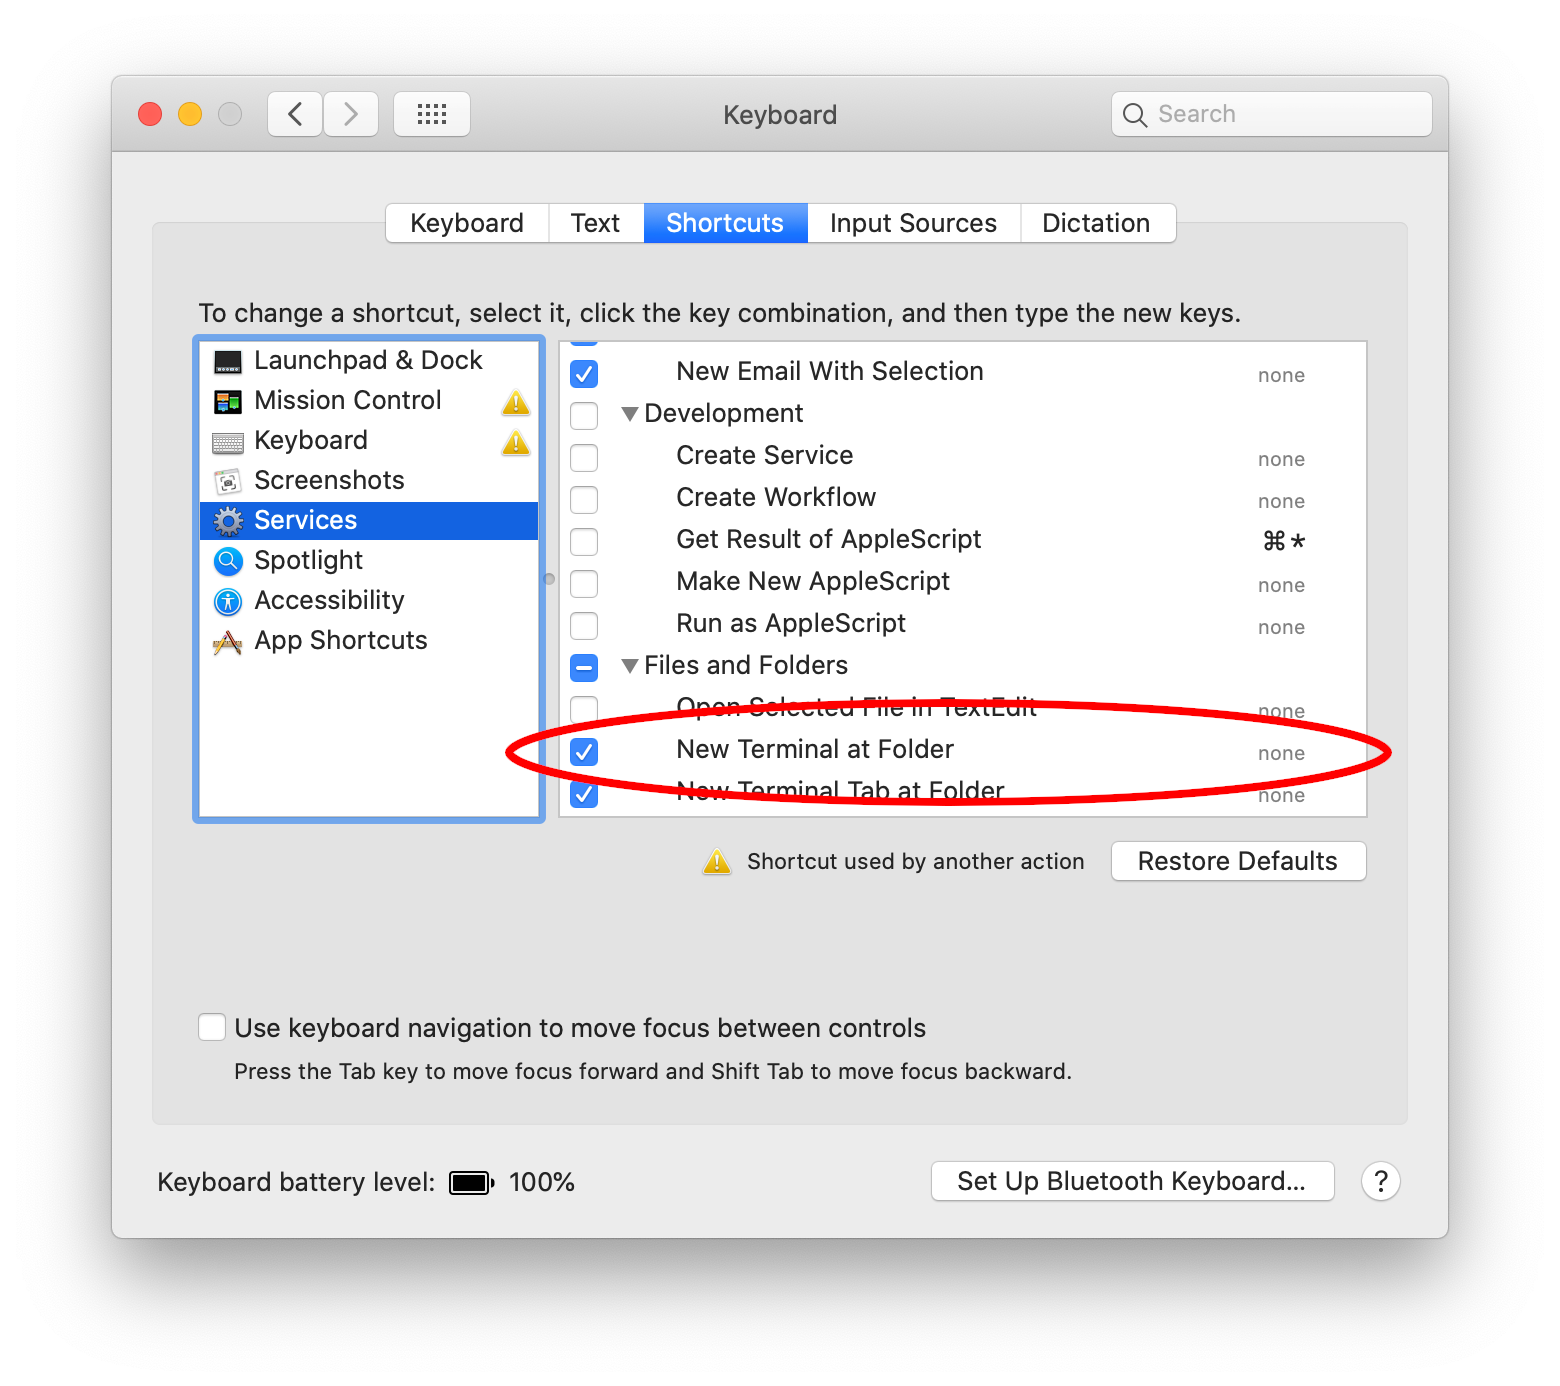 macOS: Enable New Terminal at Folder